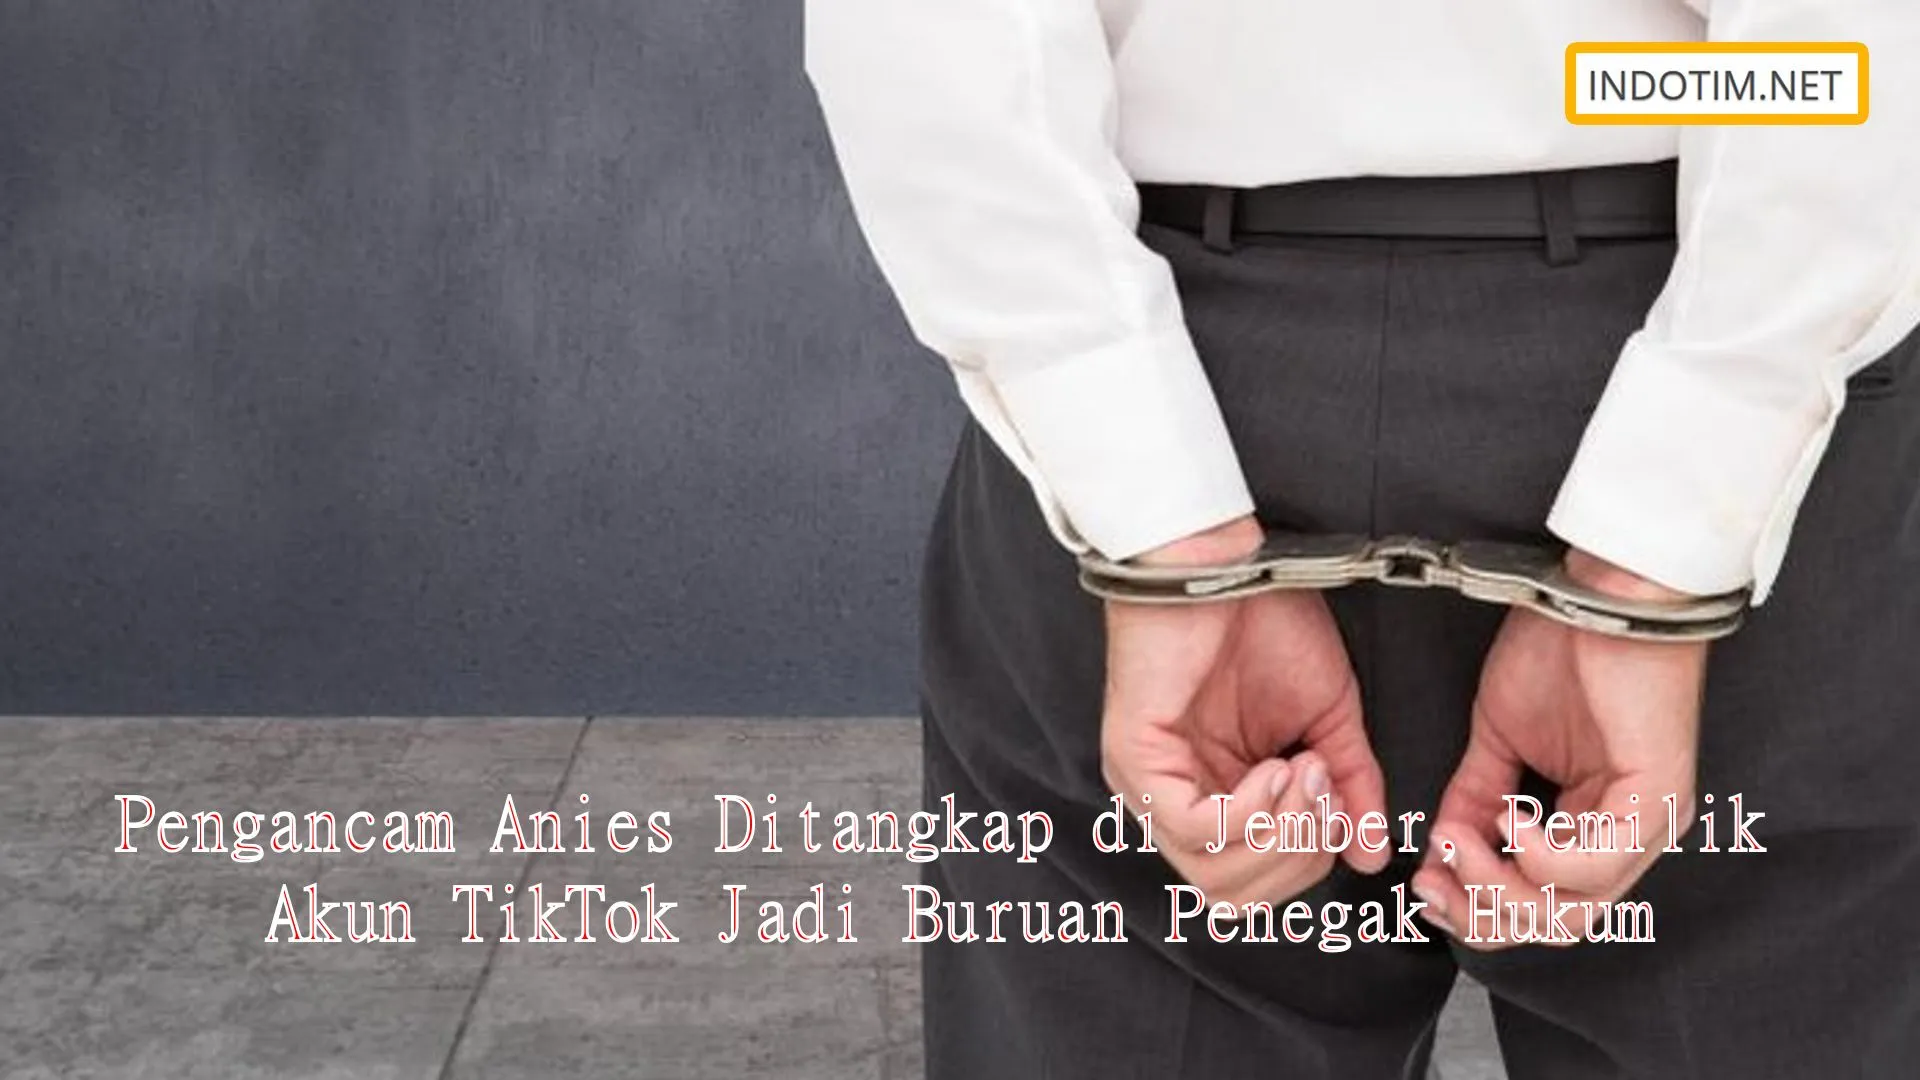 Pengancam Anies Ditangkap di Jember, Pemilik Akun TikTok Jadi Buruan Penegak Hukum